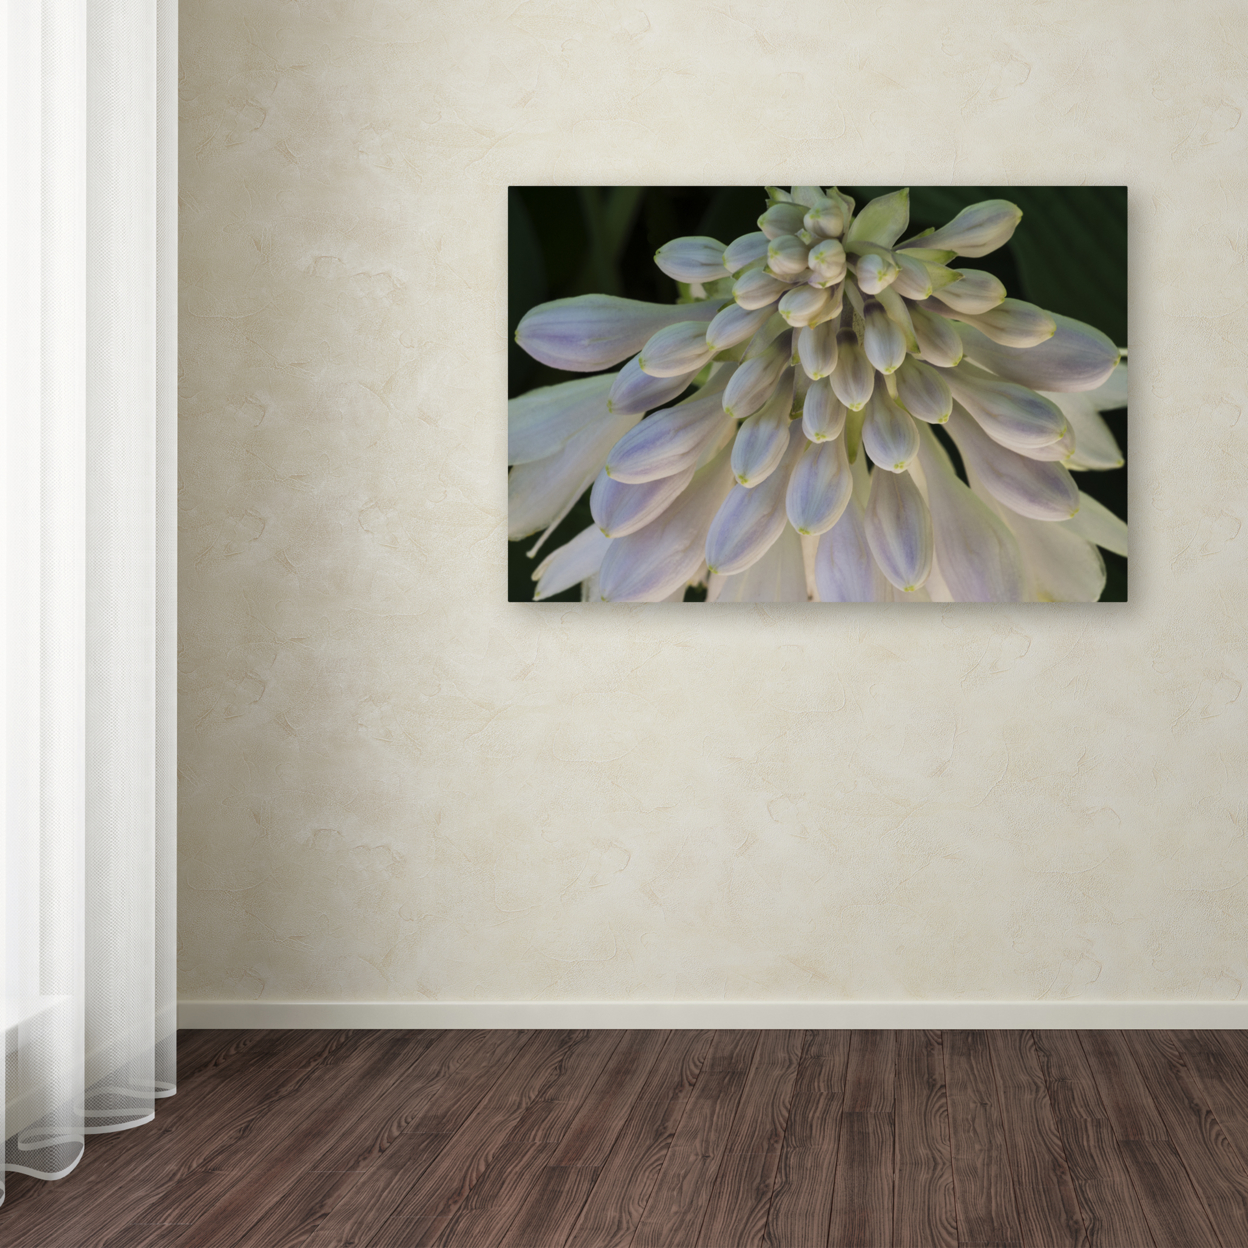 Kurt Shaffer 'Hosta Flower Abstract' Canvas Art 16 X 24